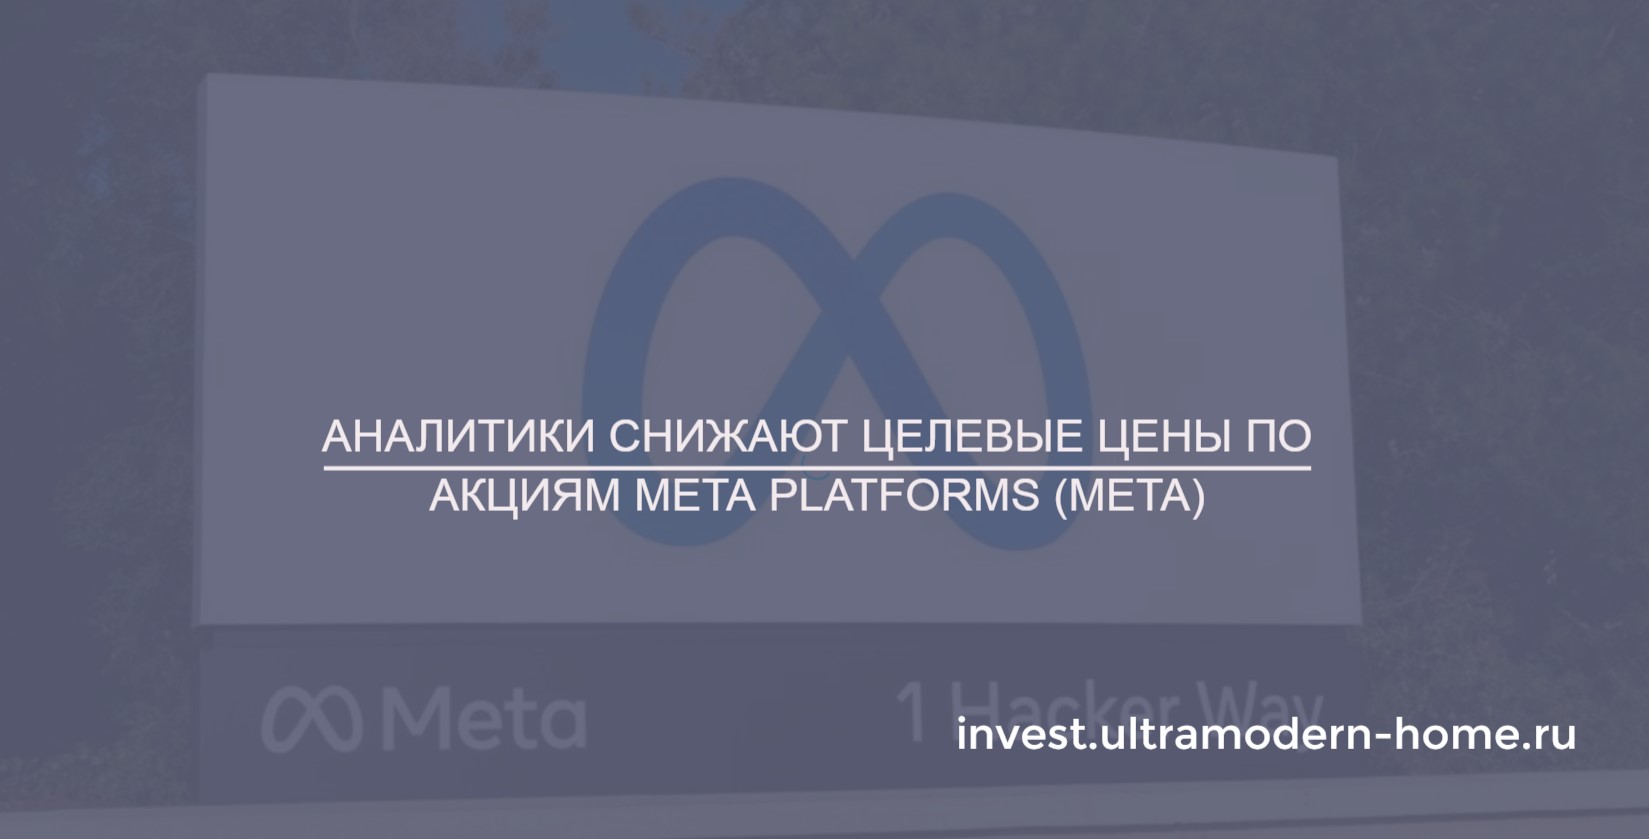 Аналитики снилизи прогнозы и целевые цены для акций Meta Platforms (META)